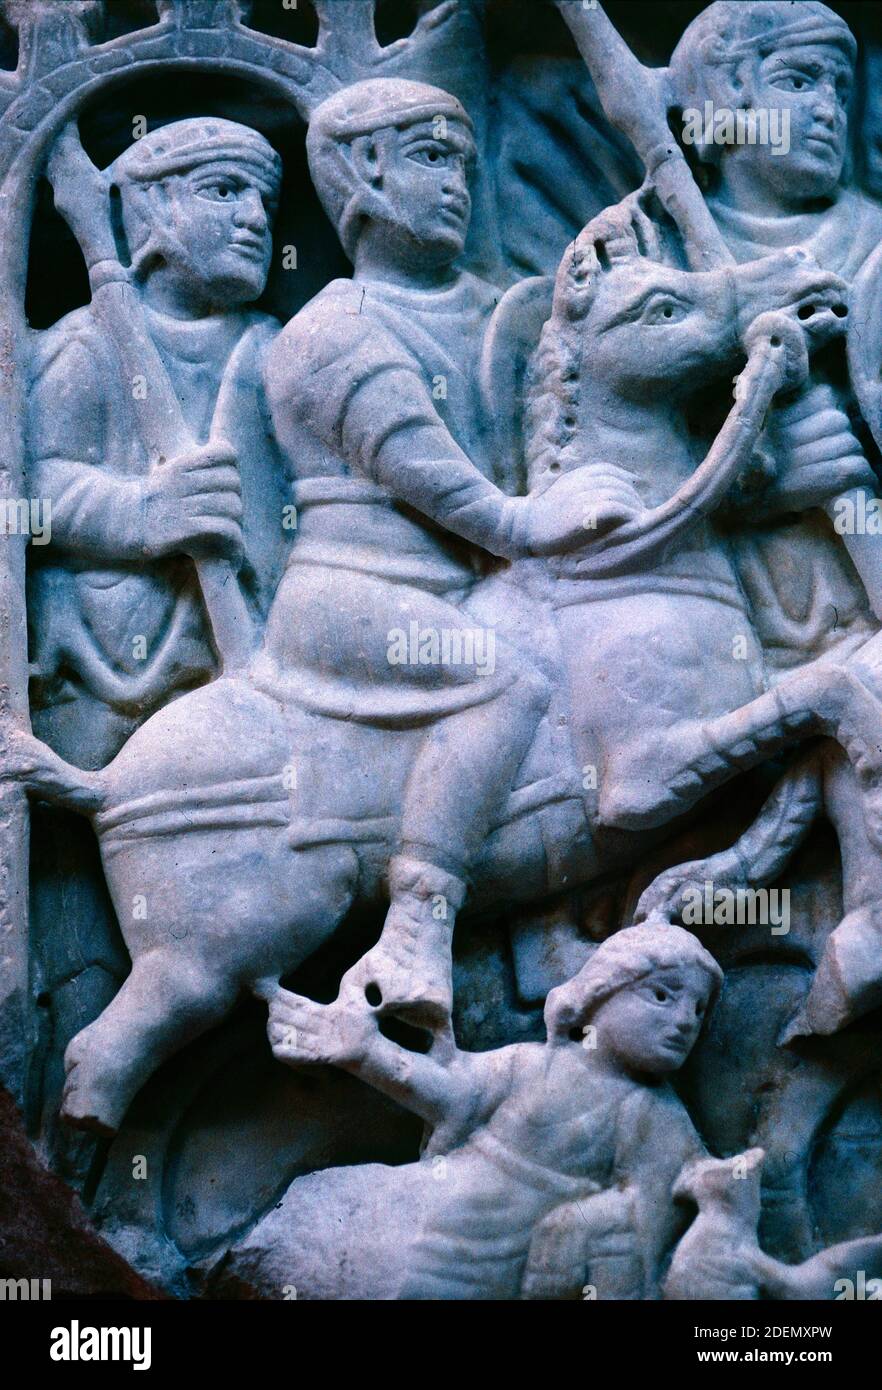 Bas-relief ou la sculpture sur pierre de soldats romains, cavaliers ou cavalerie dans Scène de bataille, Musée archéologique d'Arles, France Banque D'Images